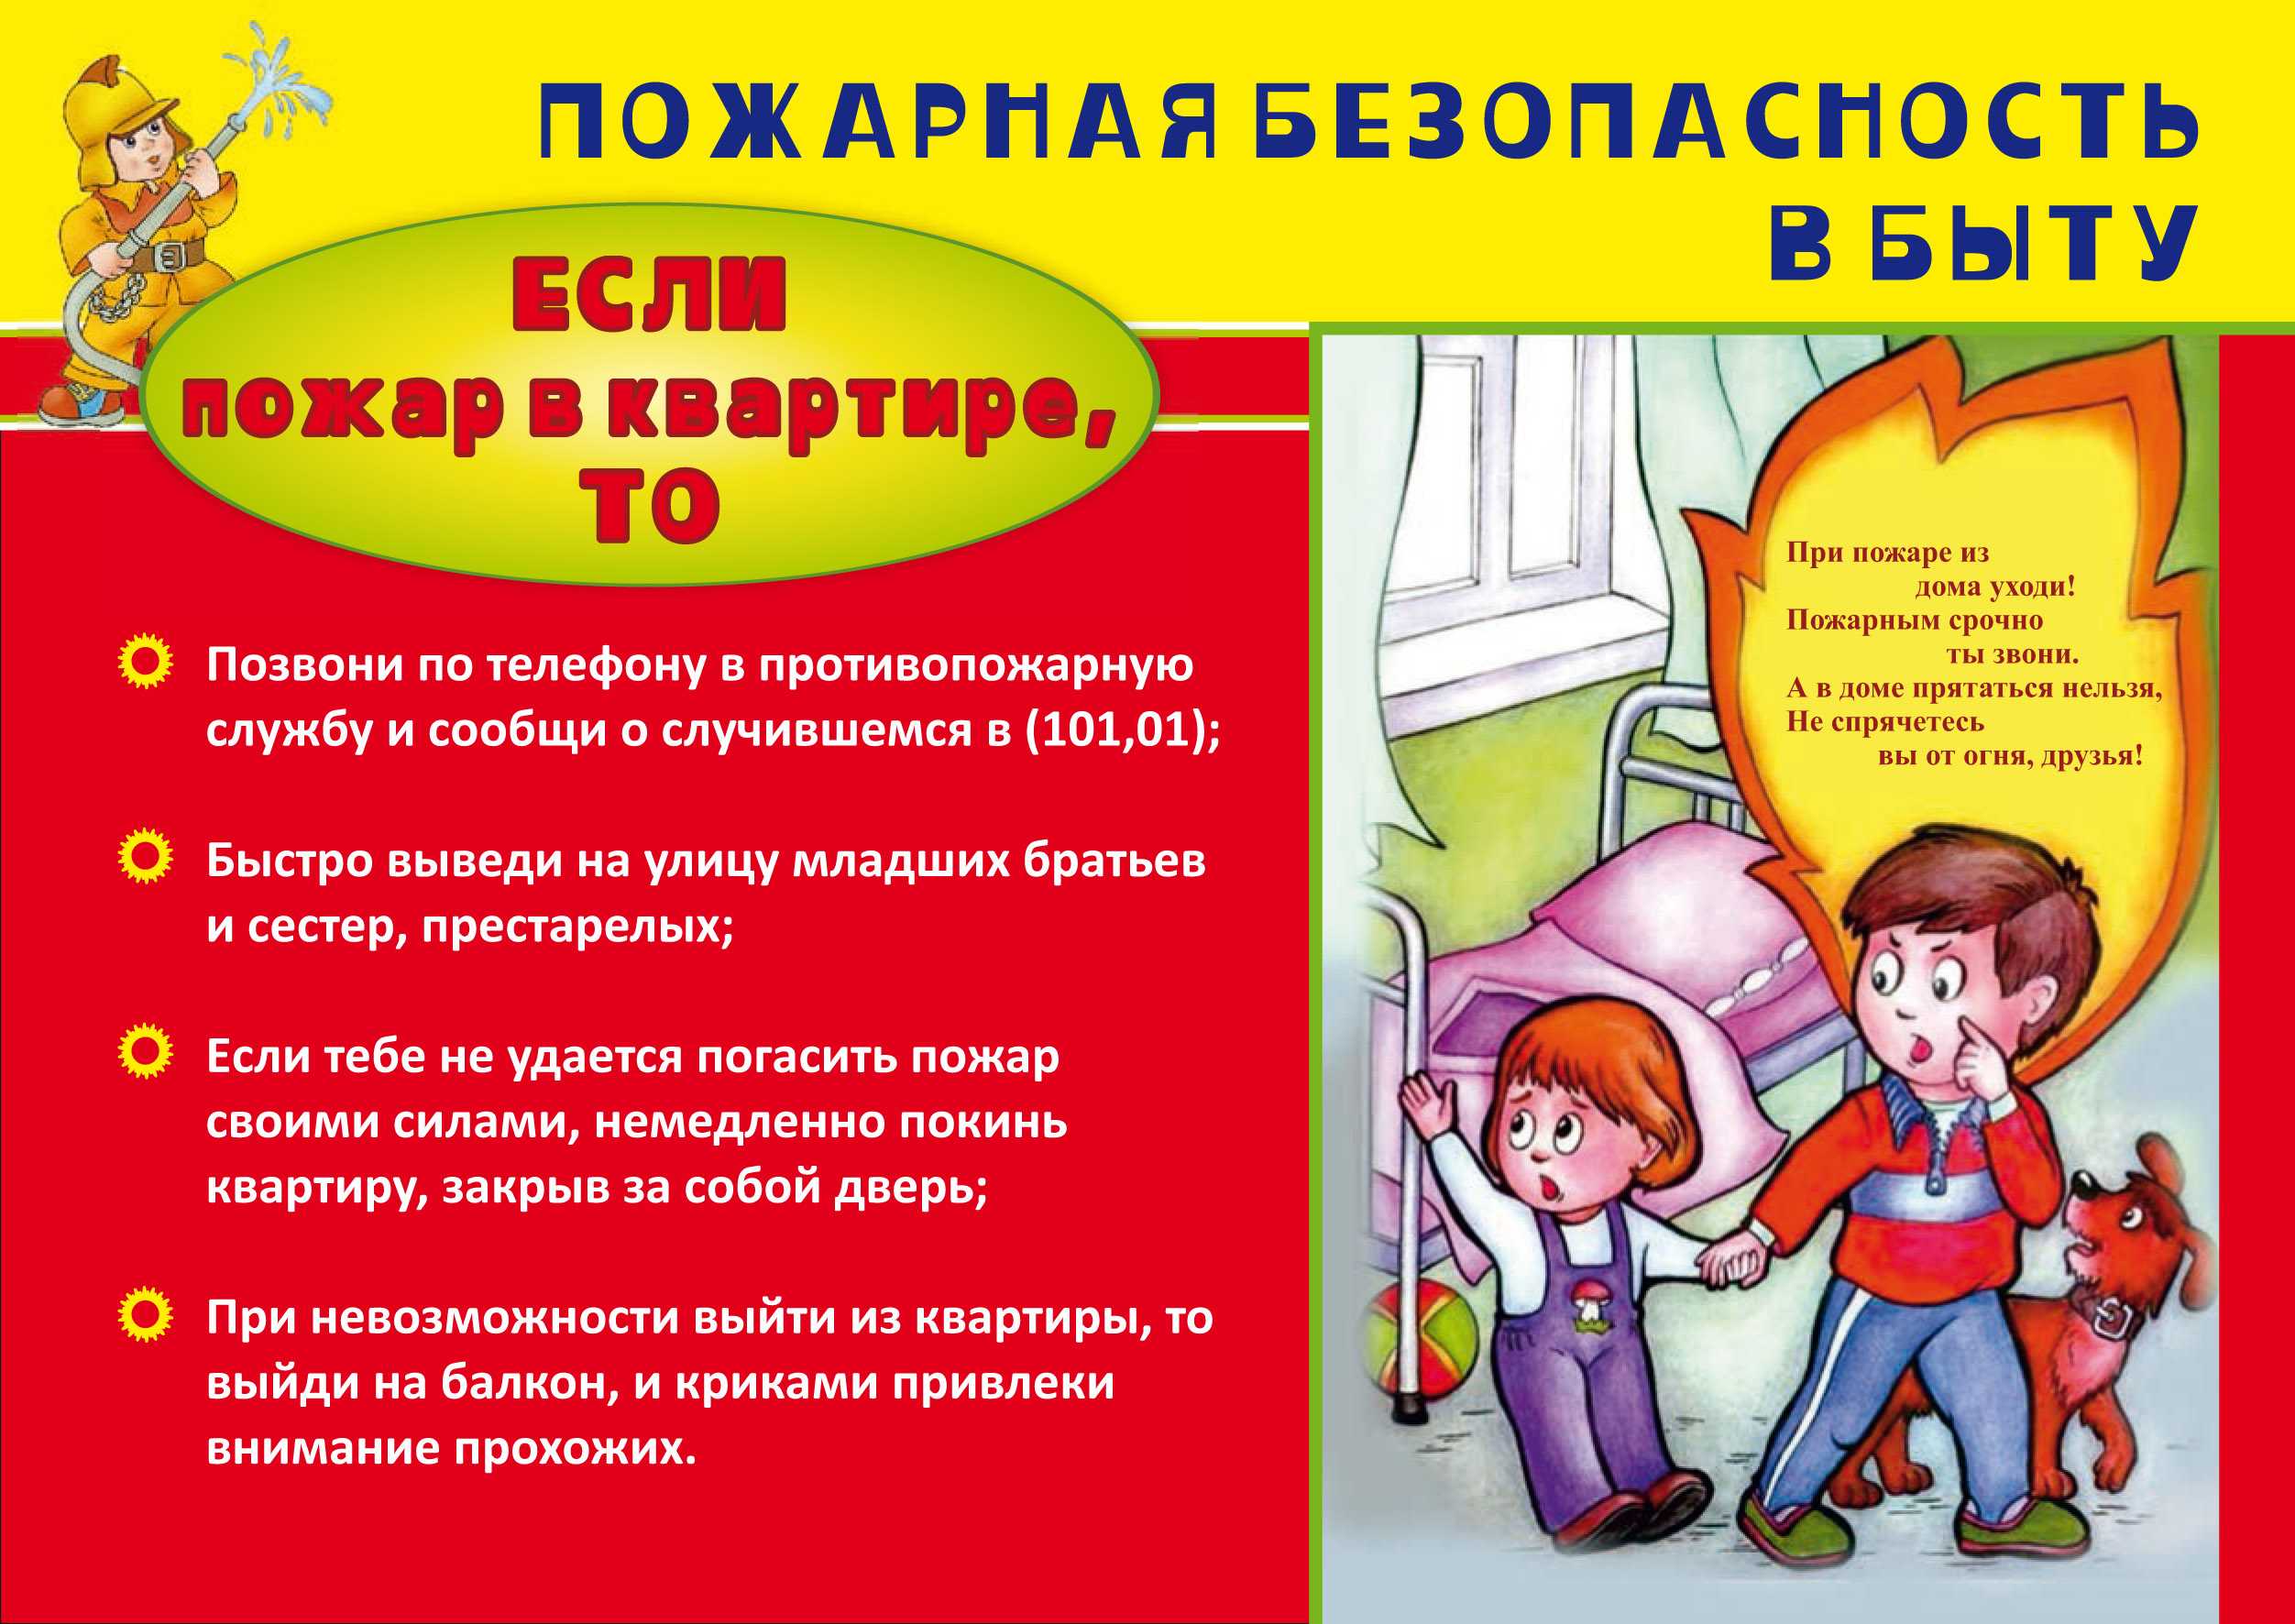 Пожарная безопасность для детей: правила, картинки :: syl.ru